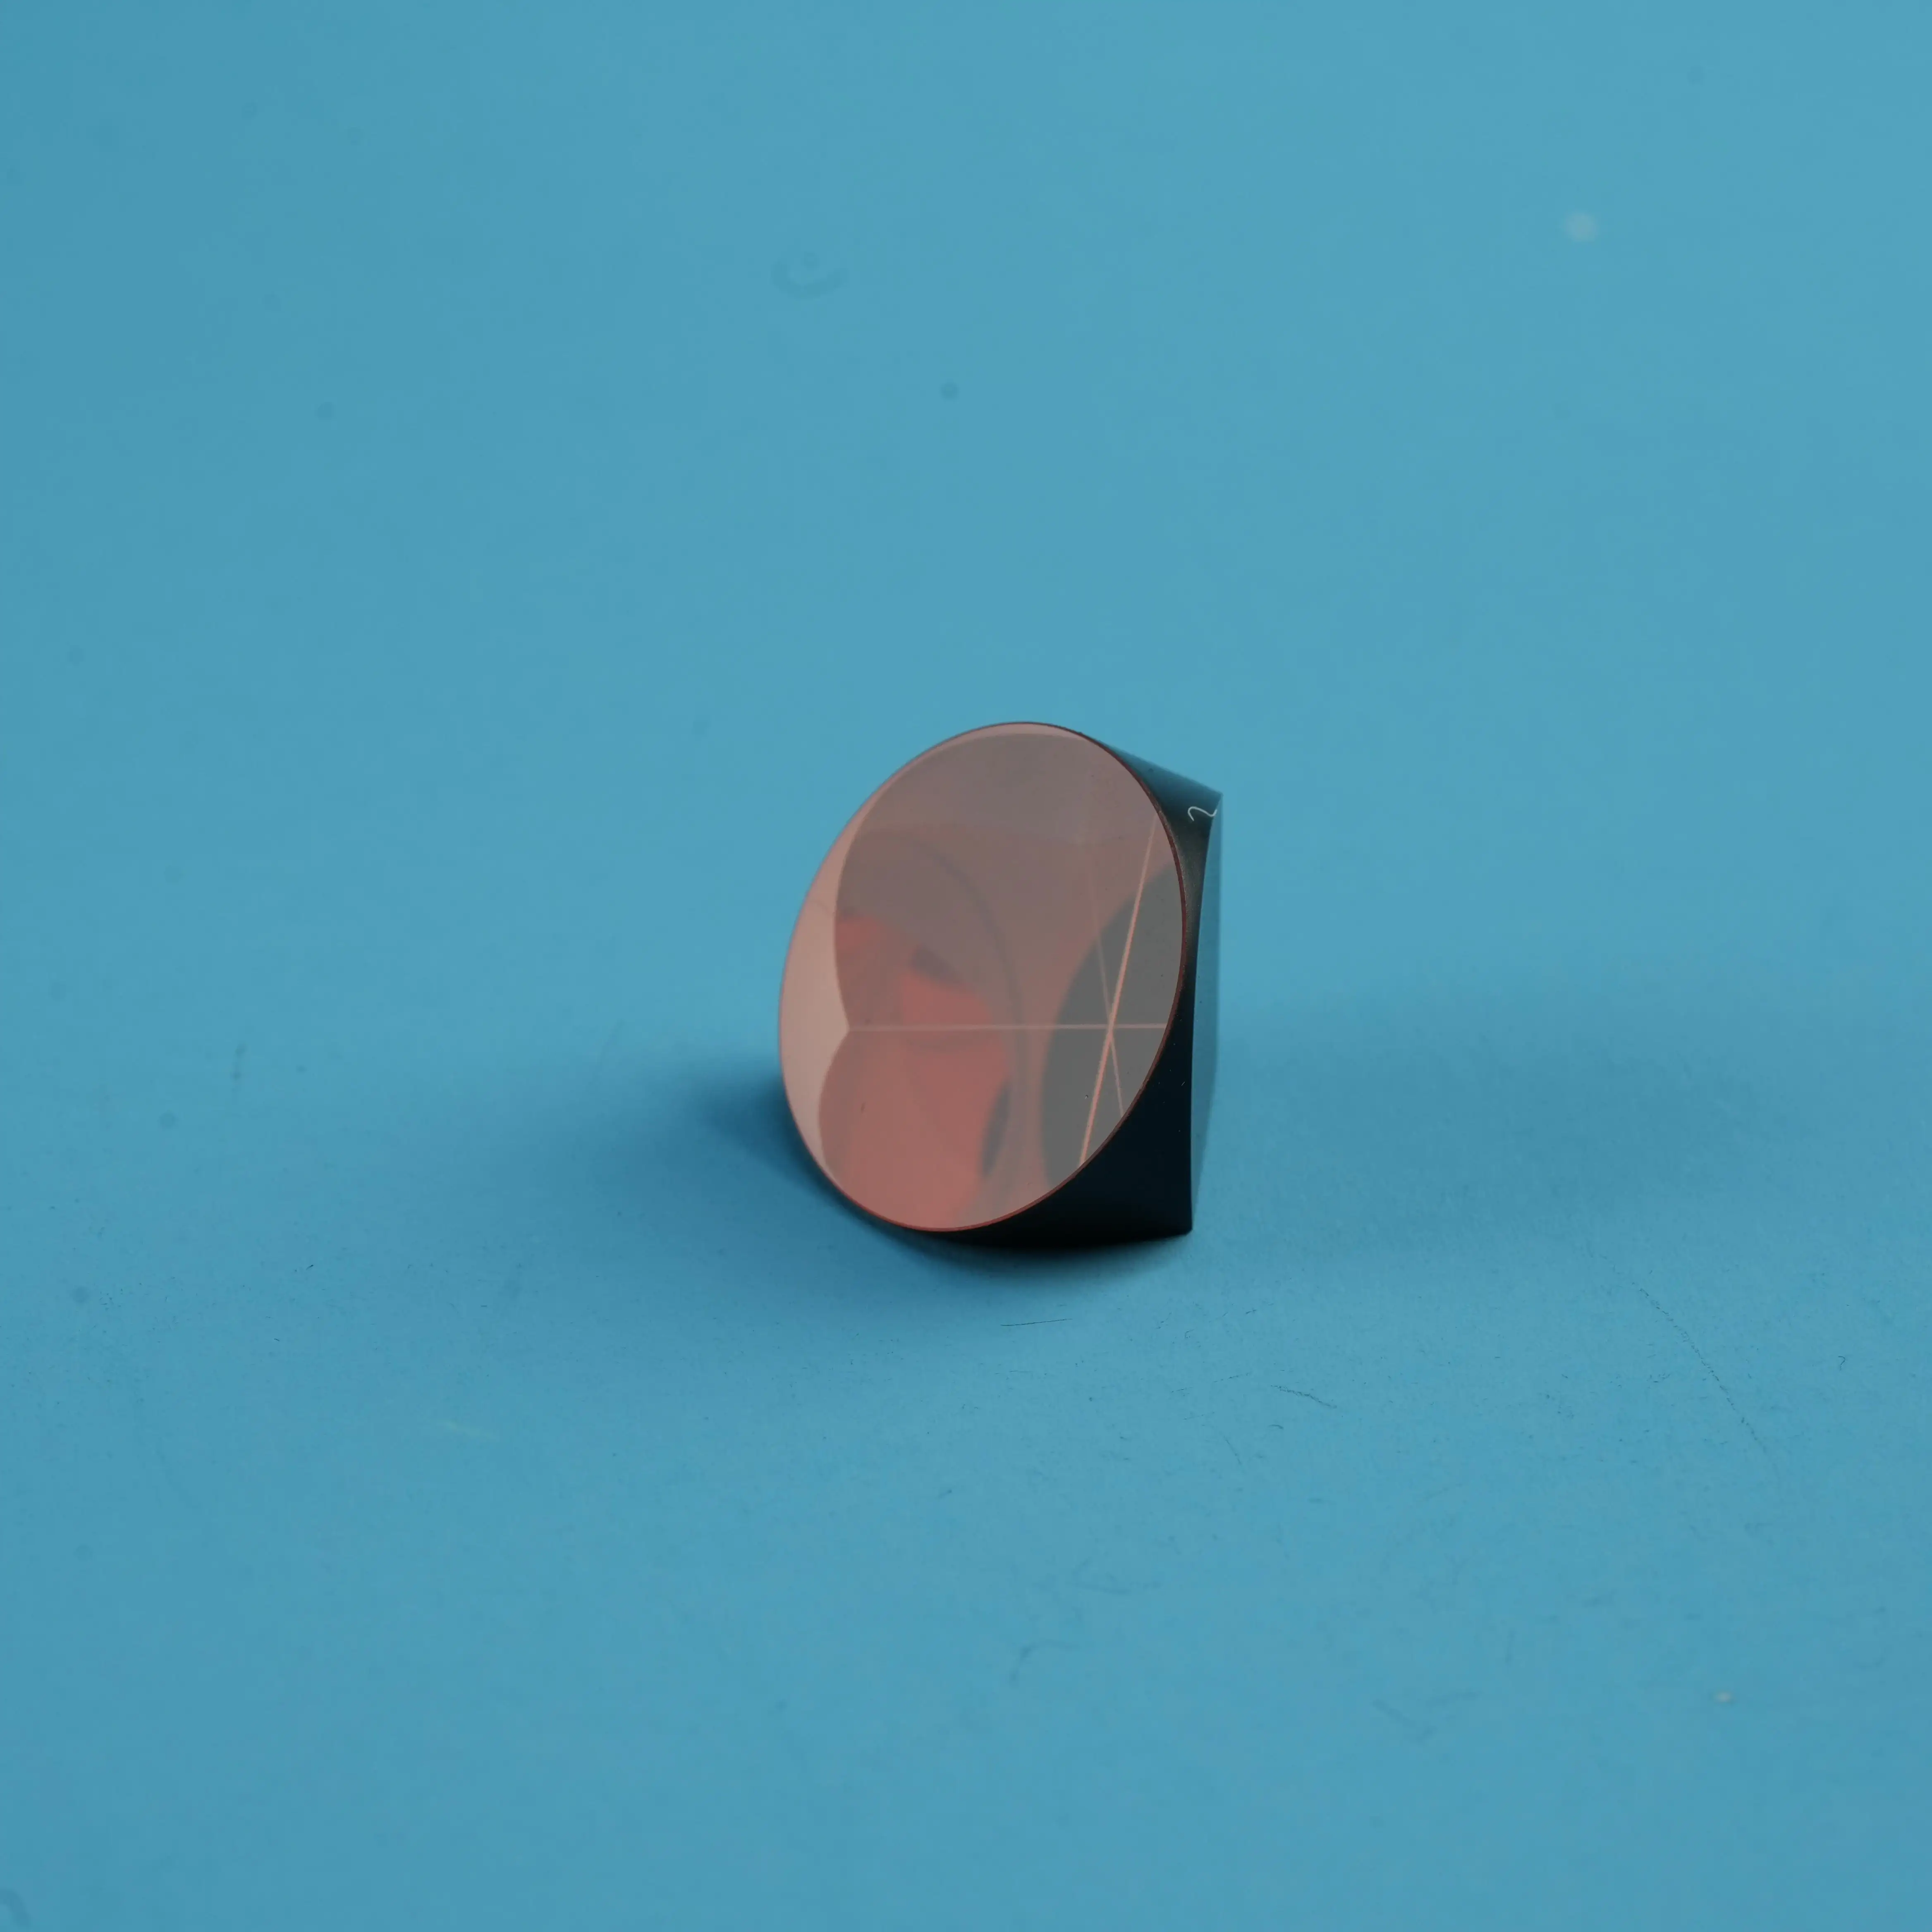 Prisma de cristal personalizado de fábrica K9 Quartzo Sapphire cunha prisma rômbico guia de luz equilateral prisma de vidro cubo de canto